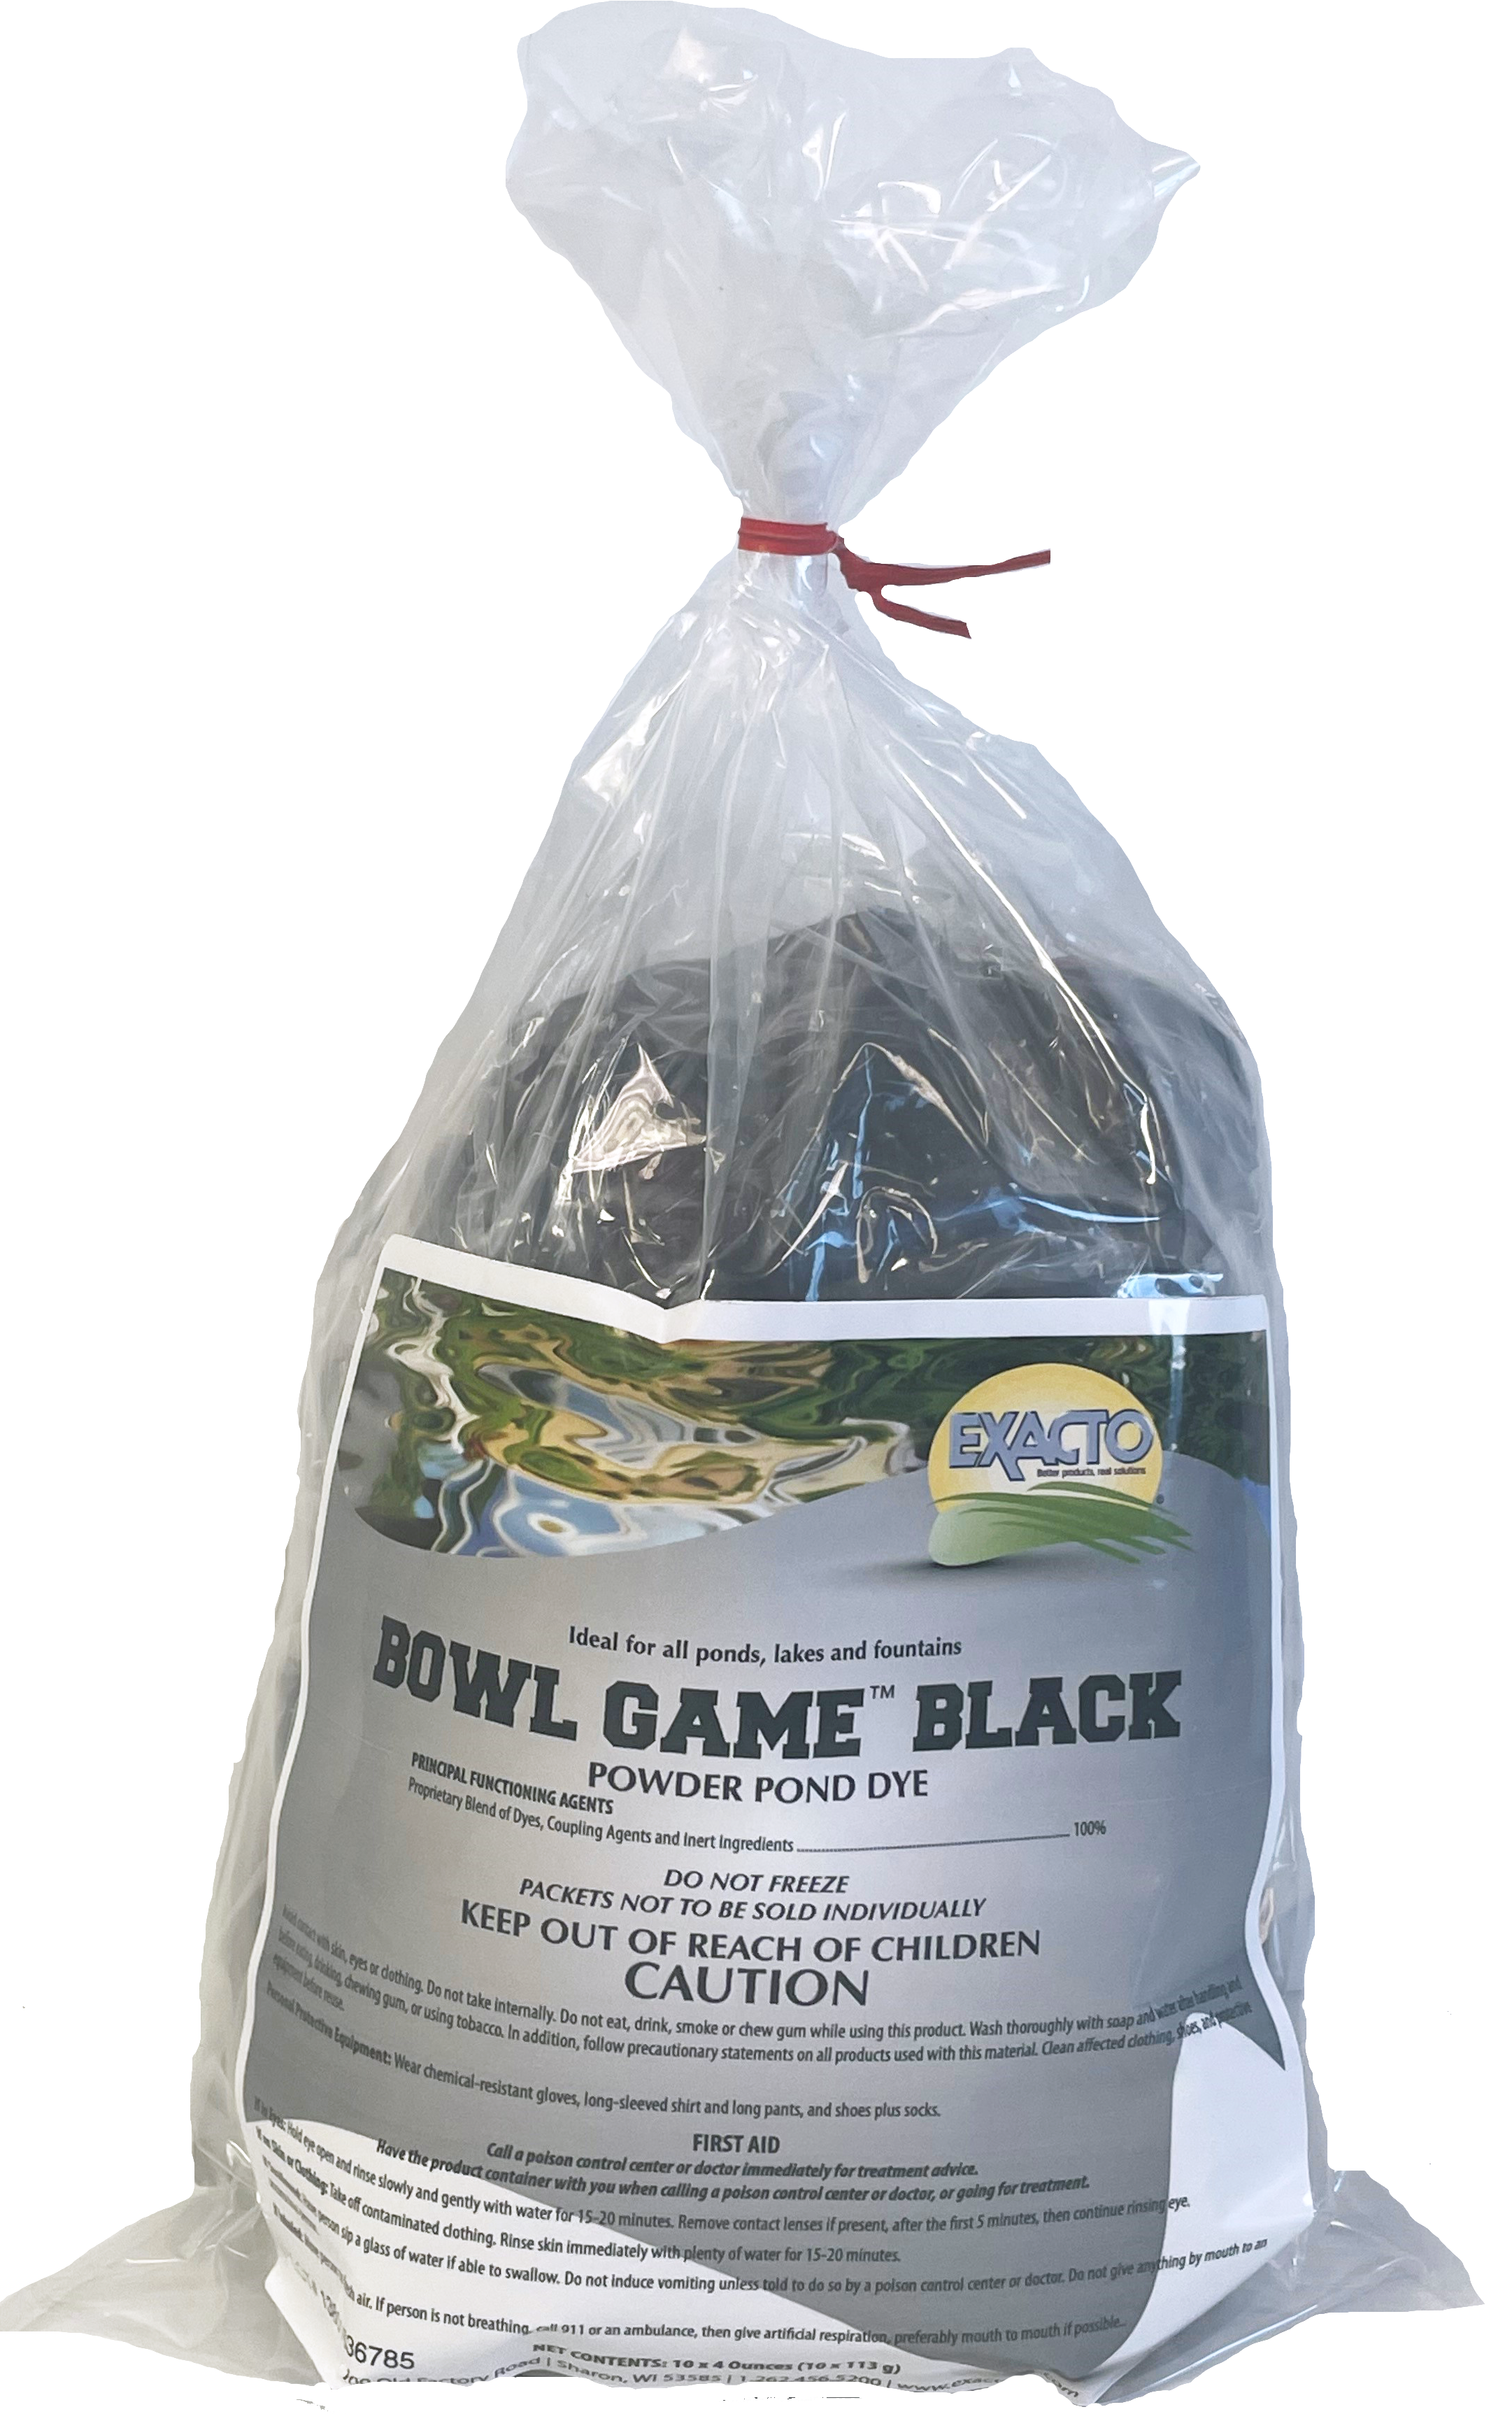 Bowl Game Pond Dye Black 10 x 4oz bags - 4 bags per case